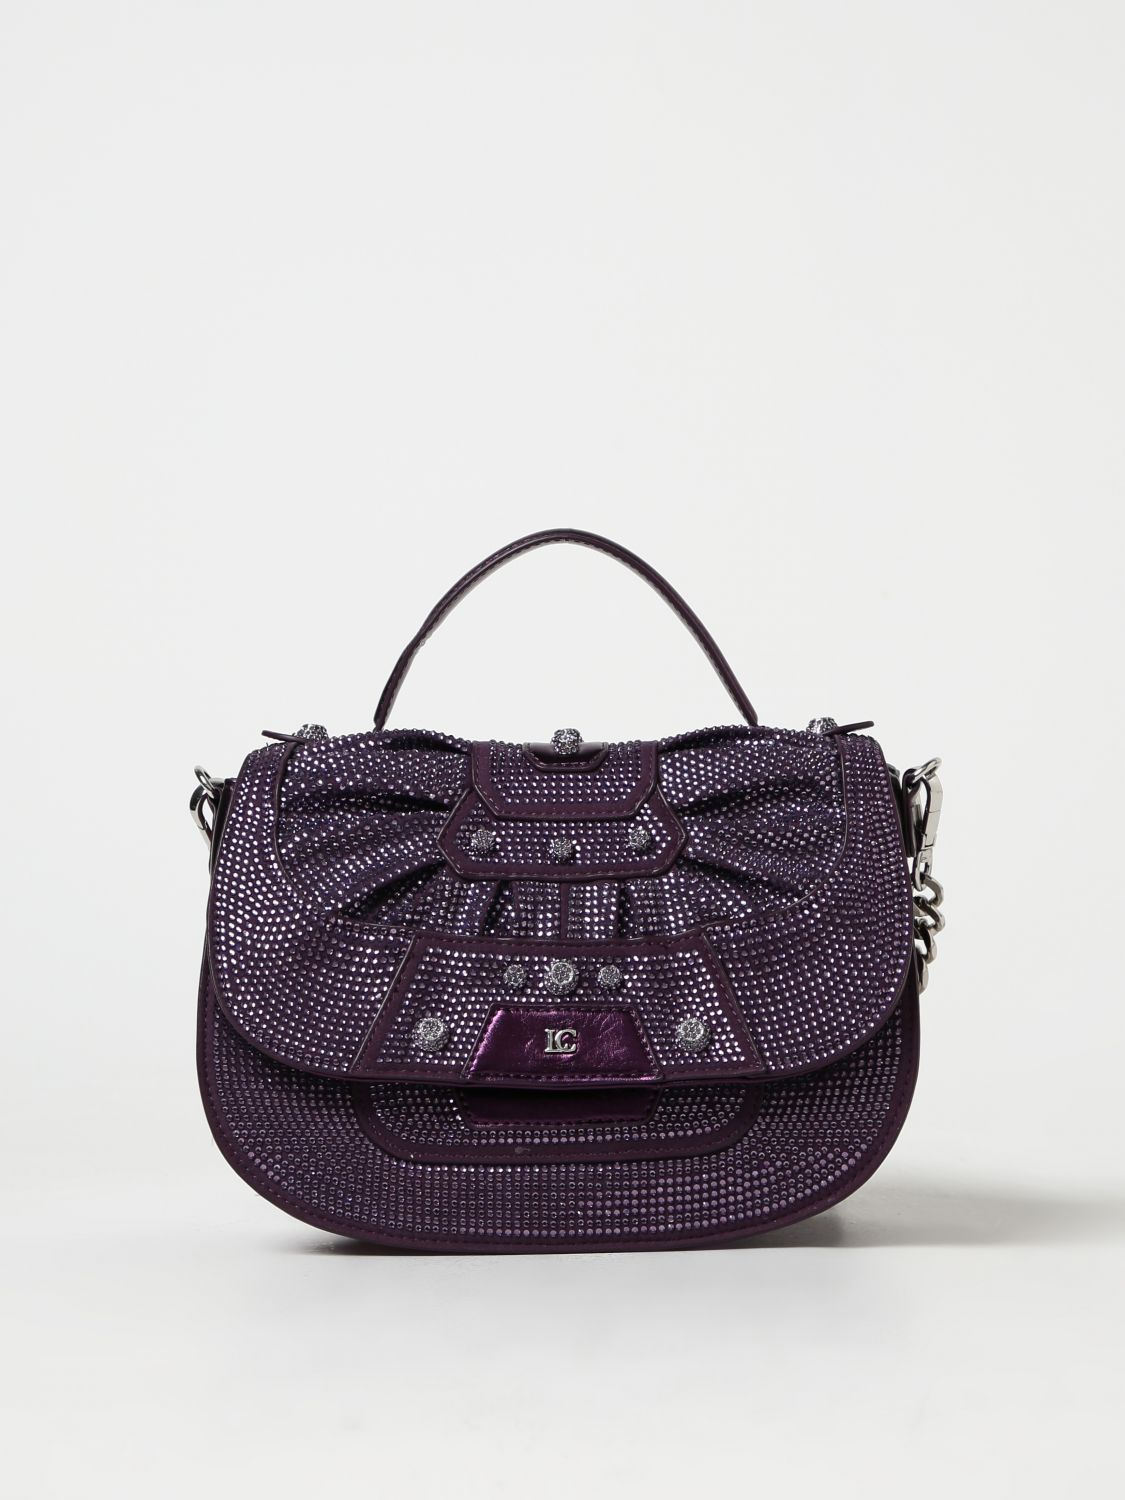 La Carrie Handbag LA CARRIE Woman colour Violet